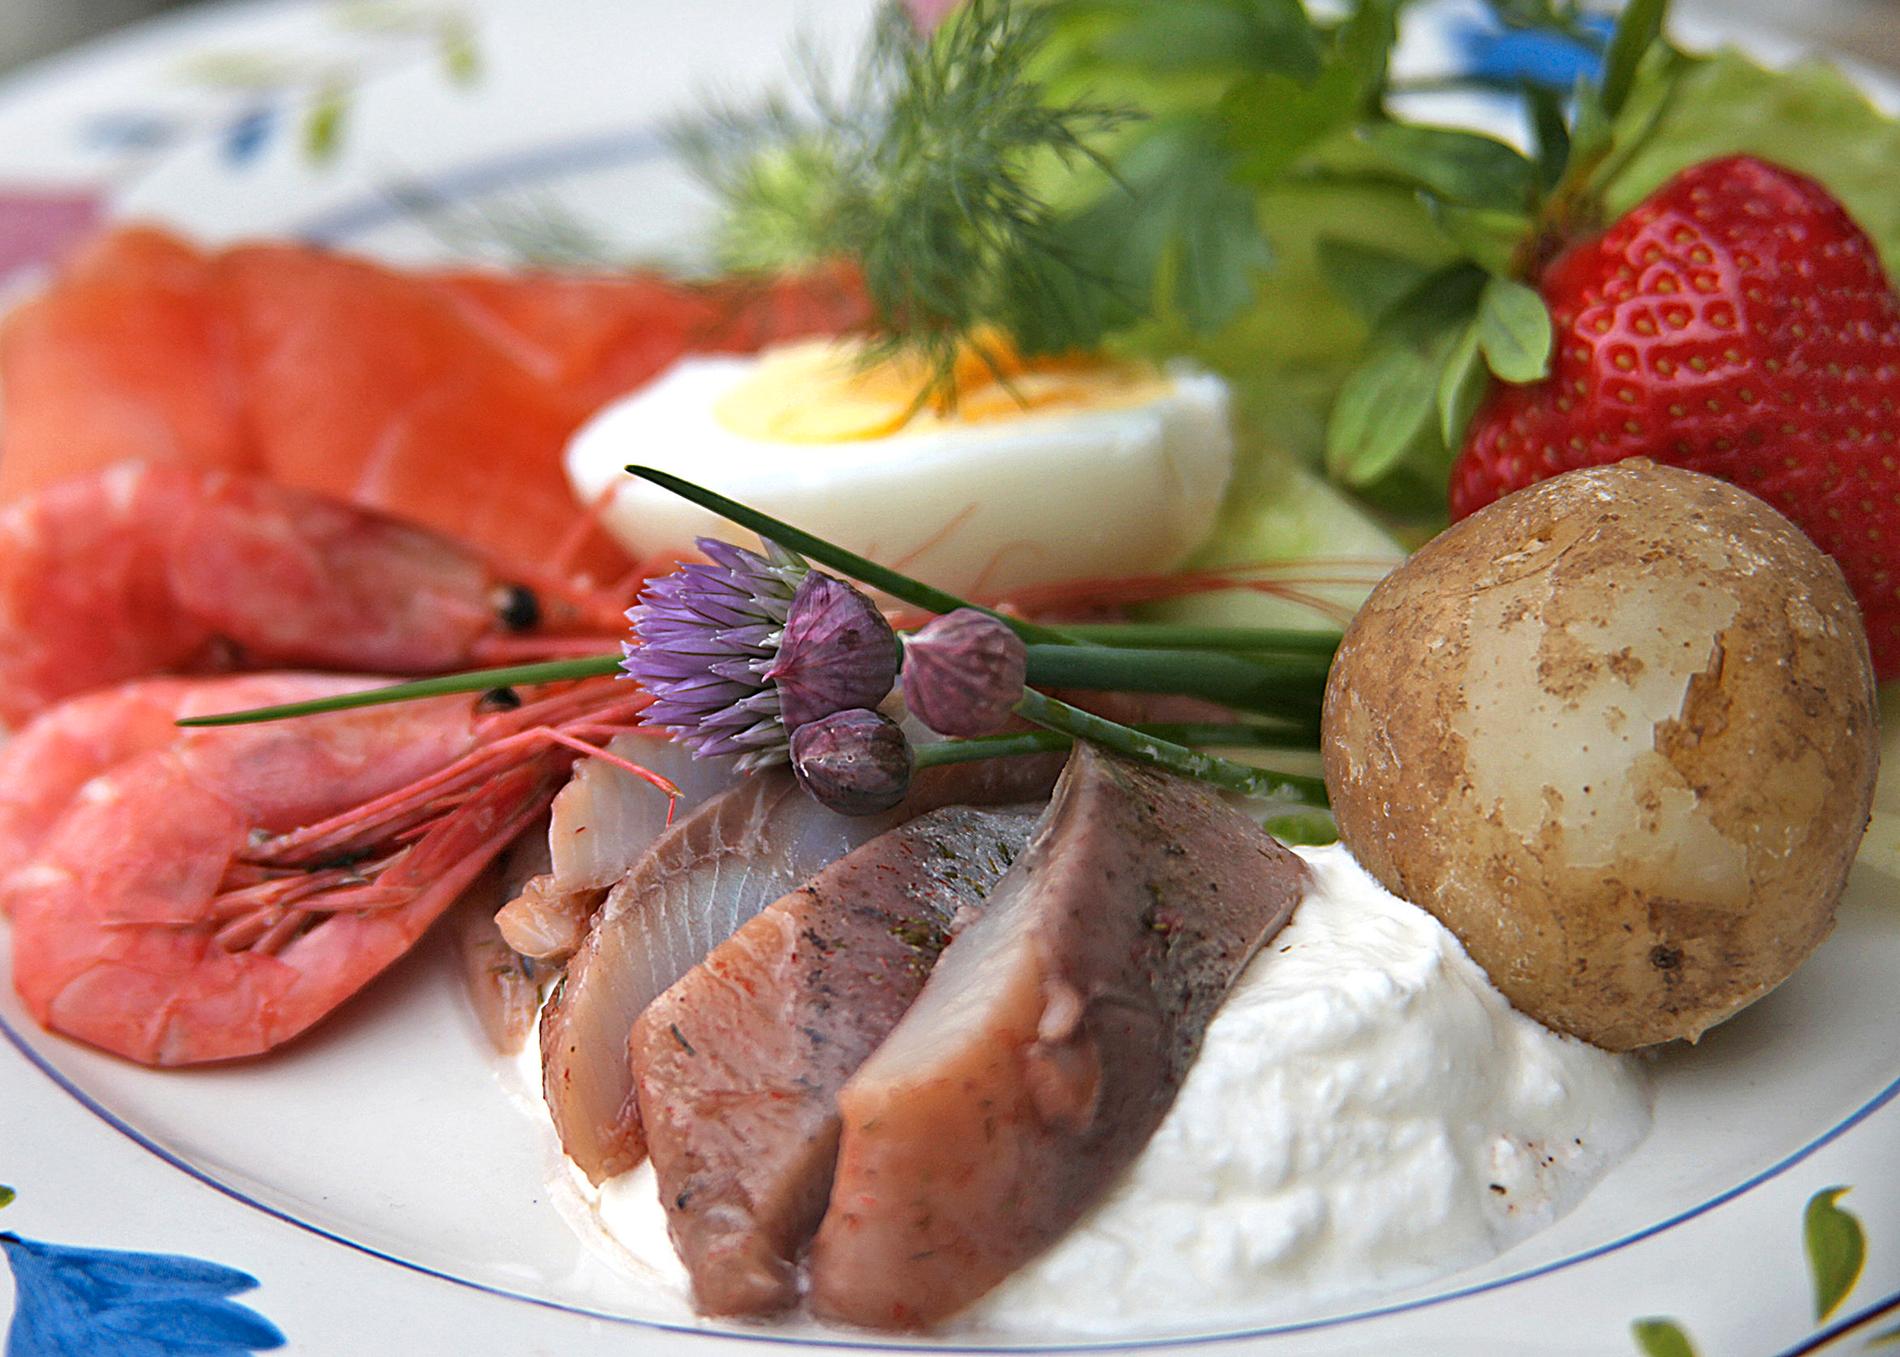 Klassisk midsommarmat är matjessill, gravad lax, räkor och hårdkokt ägg serverat med nykokt färskpotatis.